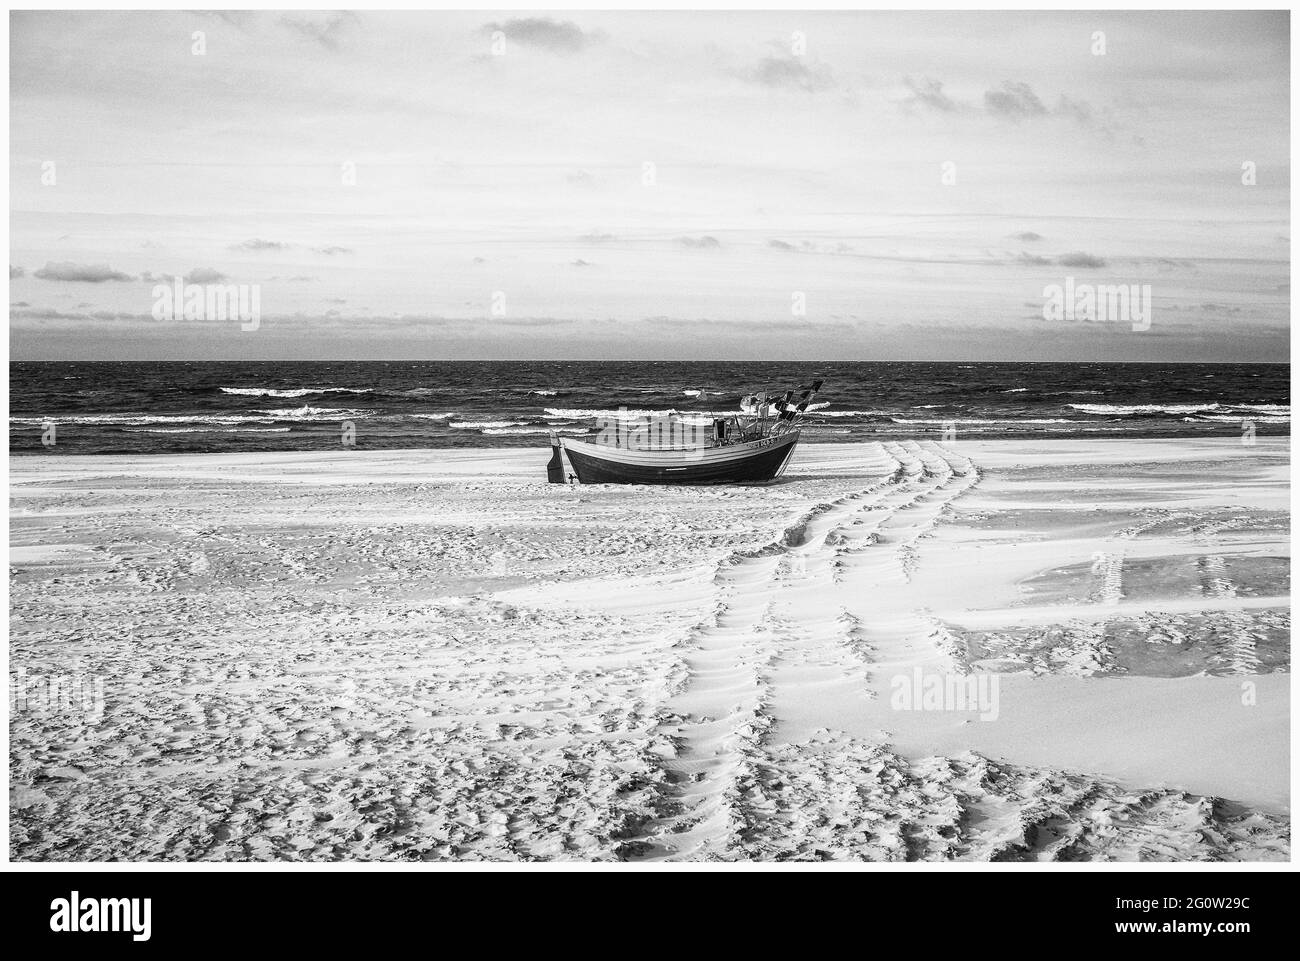 Bateaux de pêche sur la côte de l'Osstsee sur la plage en Pologne dans un aspect noir et blanc mélancolique. Plage sur la mer Baltique avec bateaux de pêche. Banque D'Images